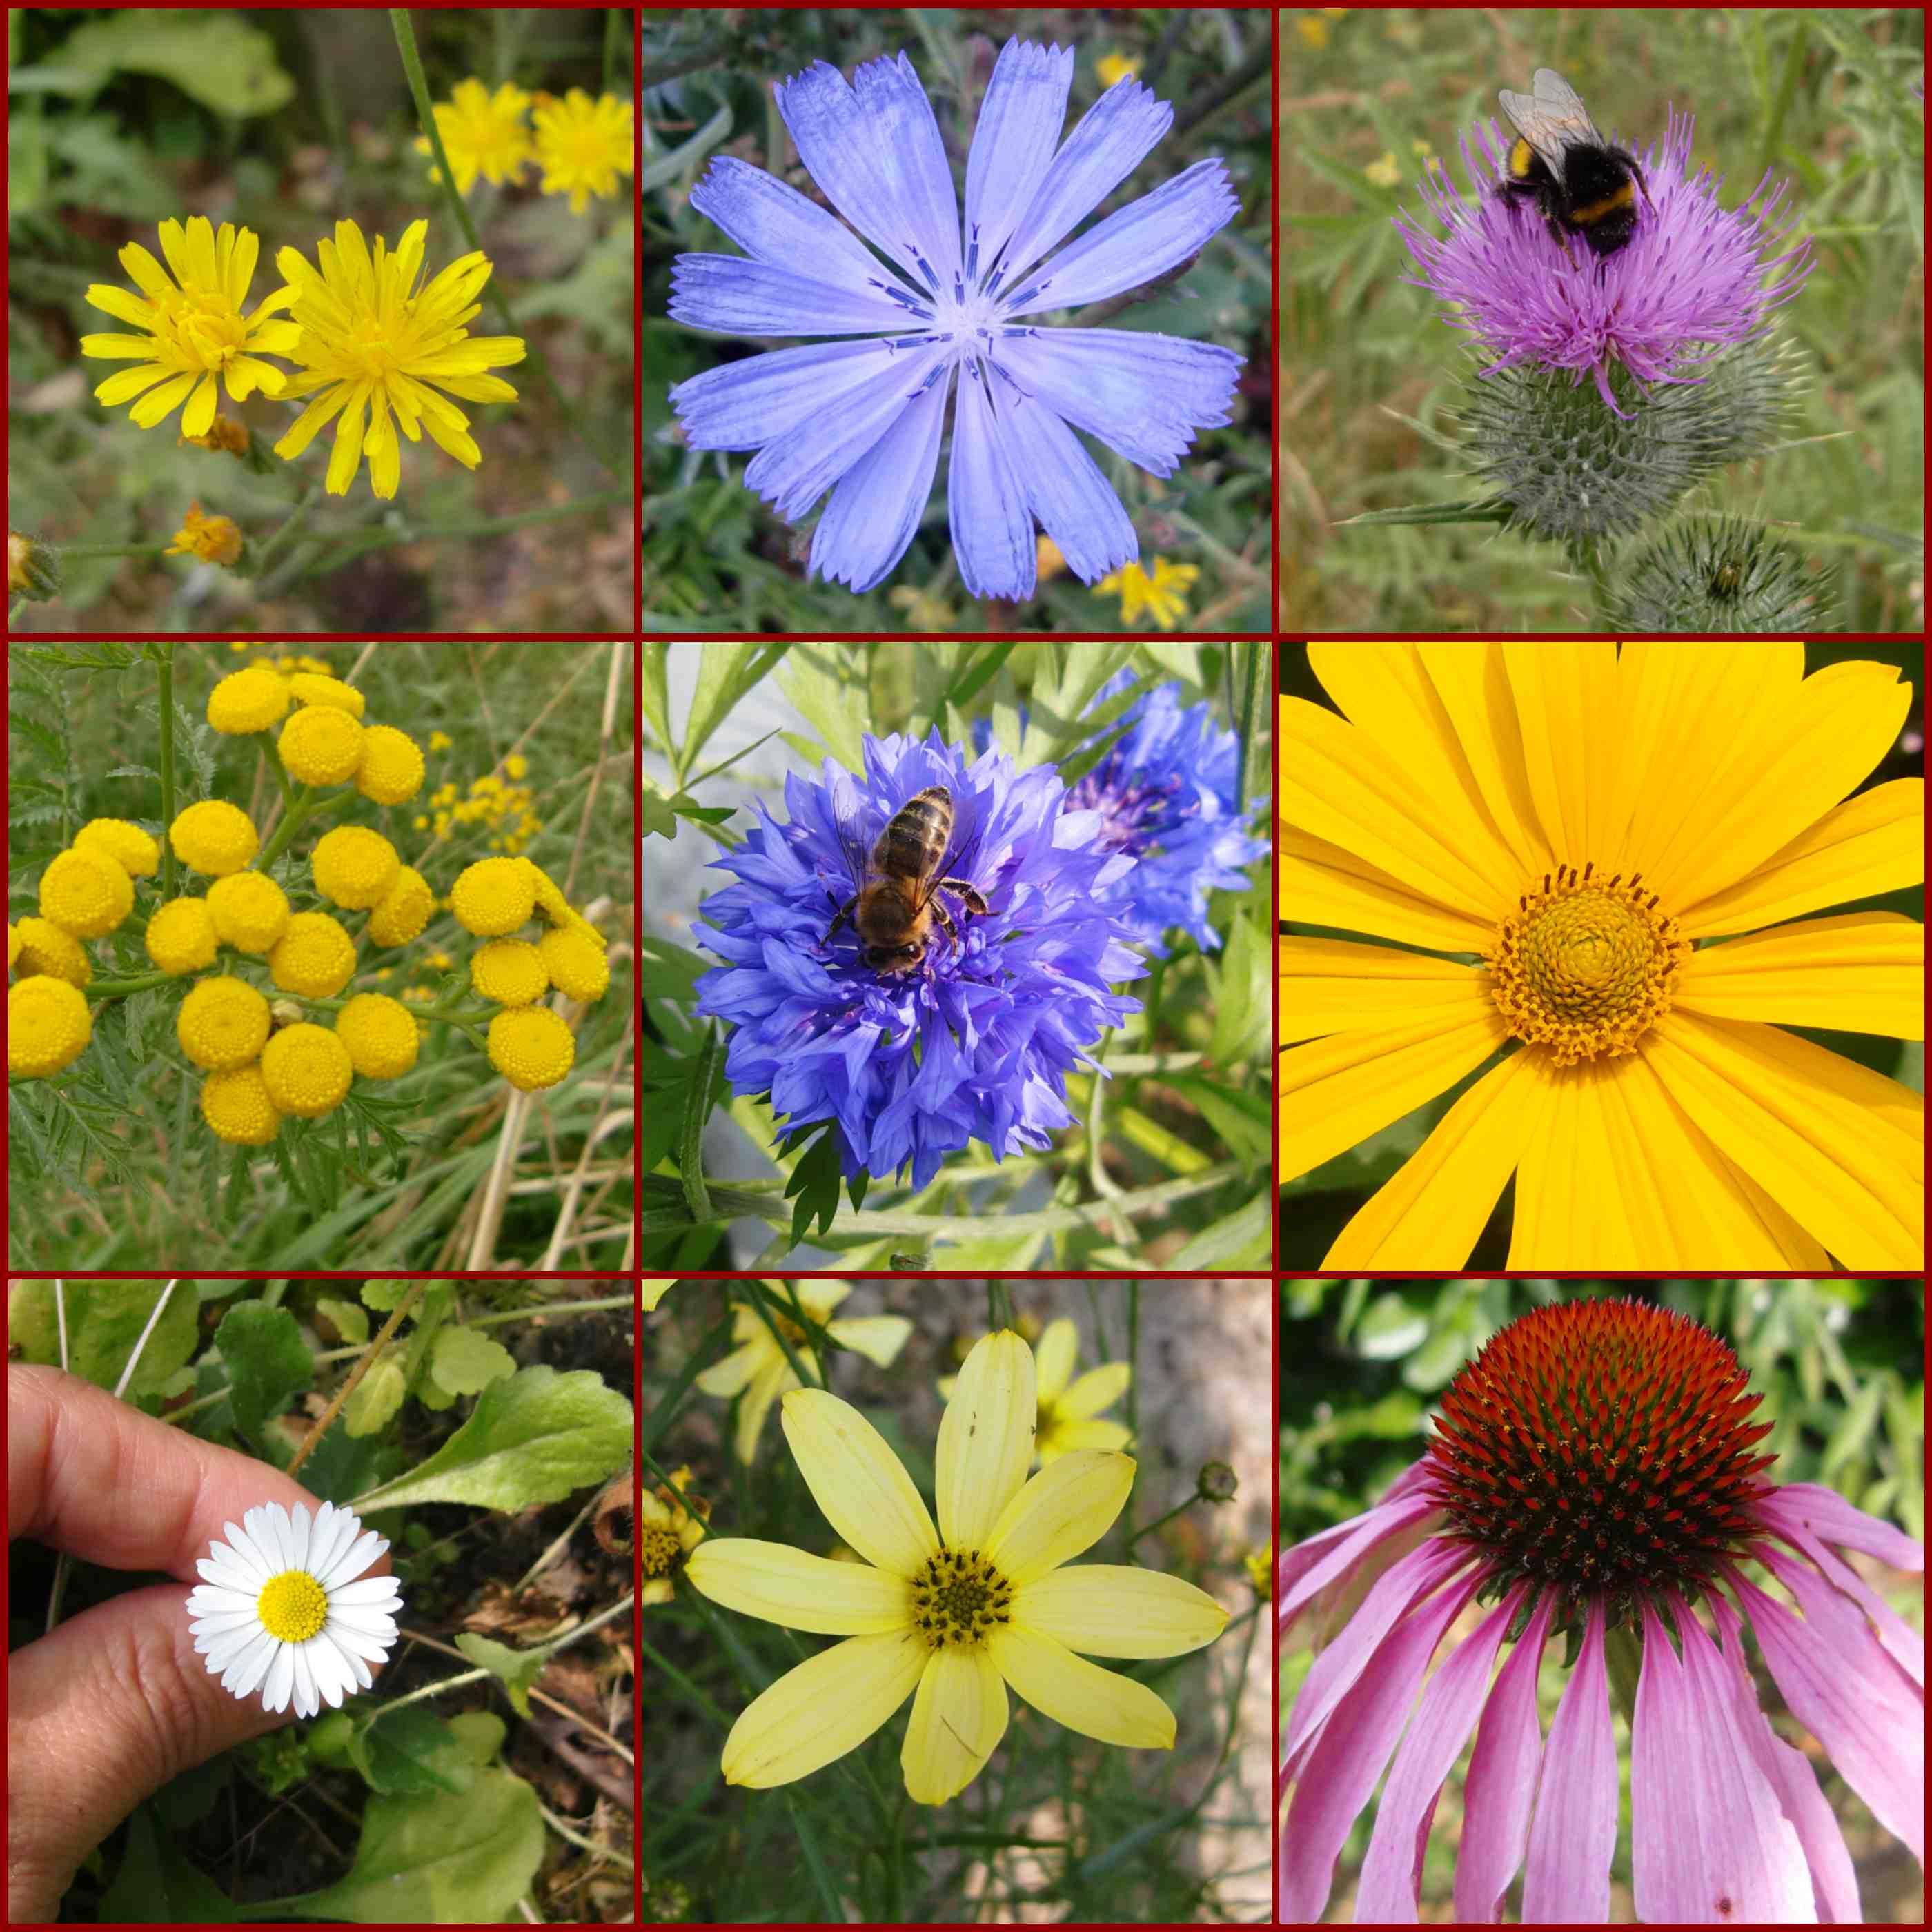 Korbblütler aus dem Garten, Wegwarte, Sonnenhut, Gänseblümchen, Kornblume, Distel